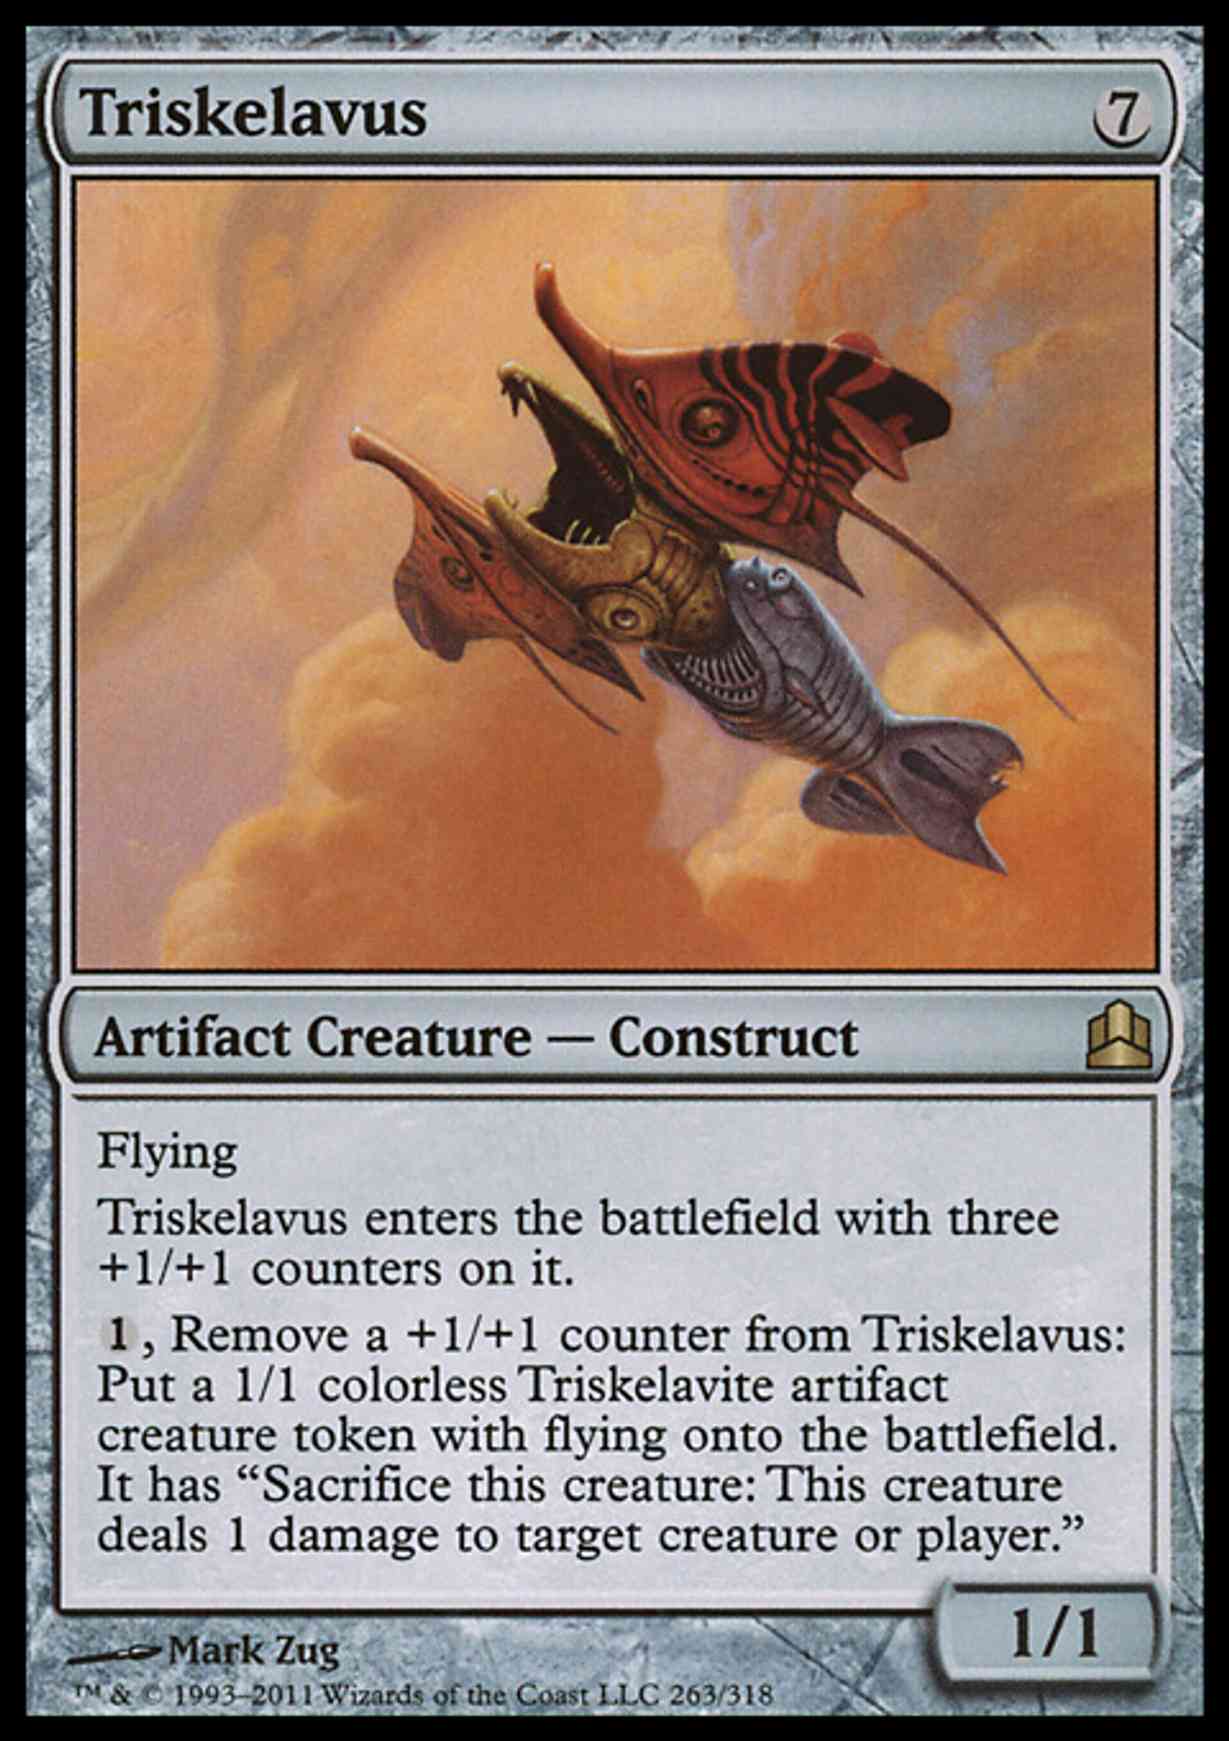 Triskelavus magic card front